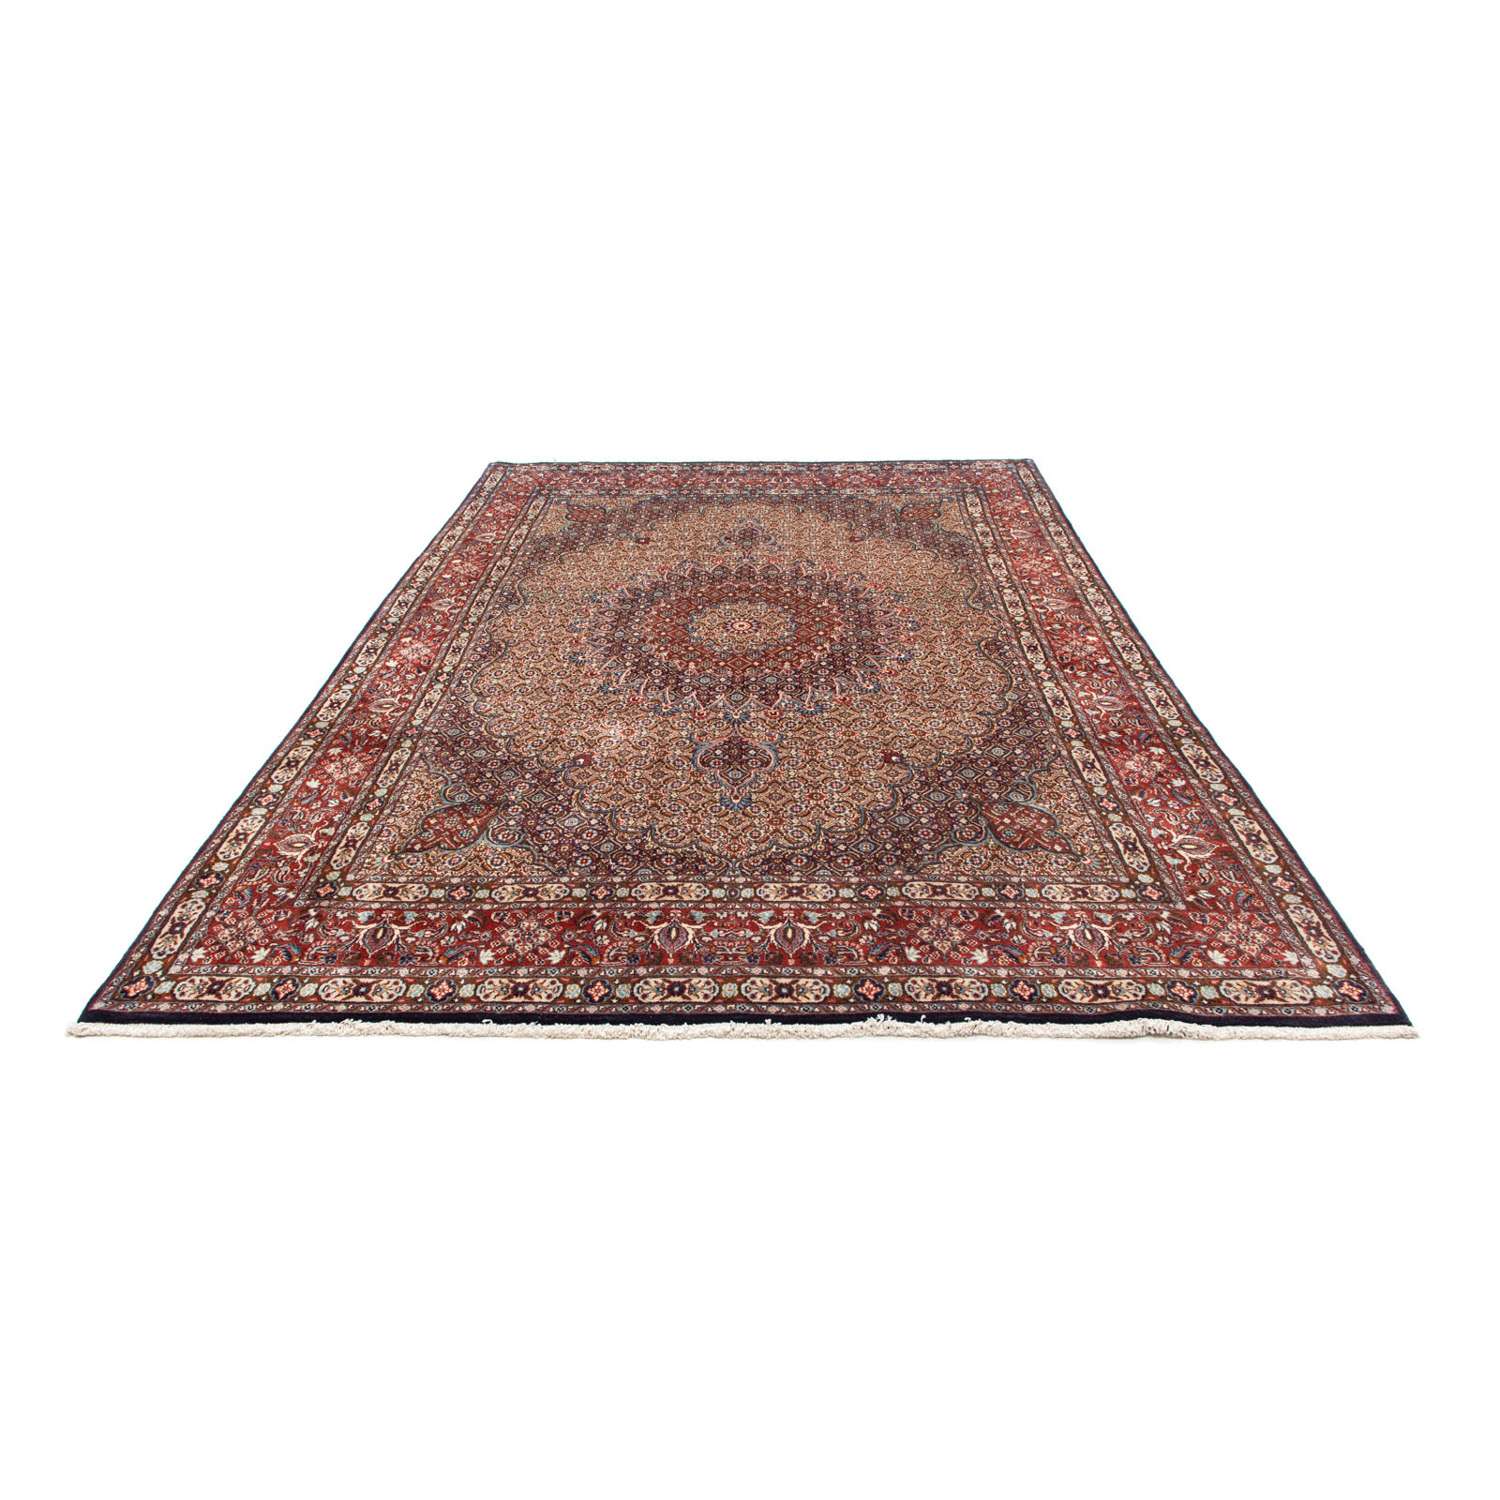 Persisk teppe - klassisk - 300 x 199 cm - lys rød